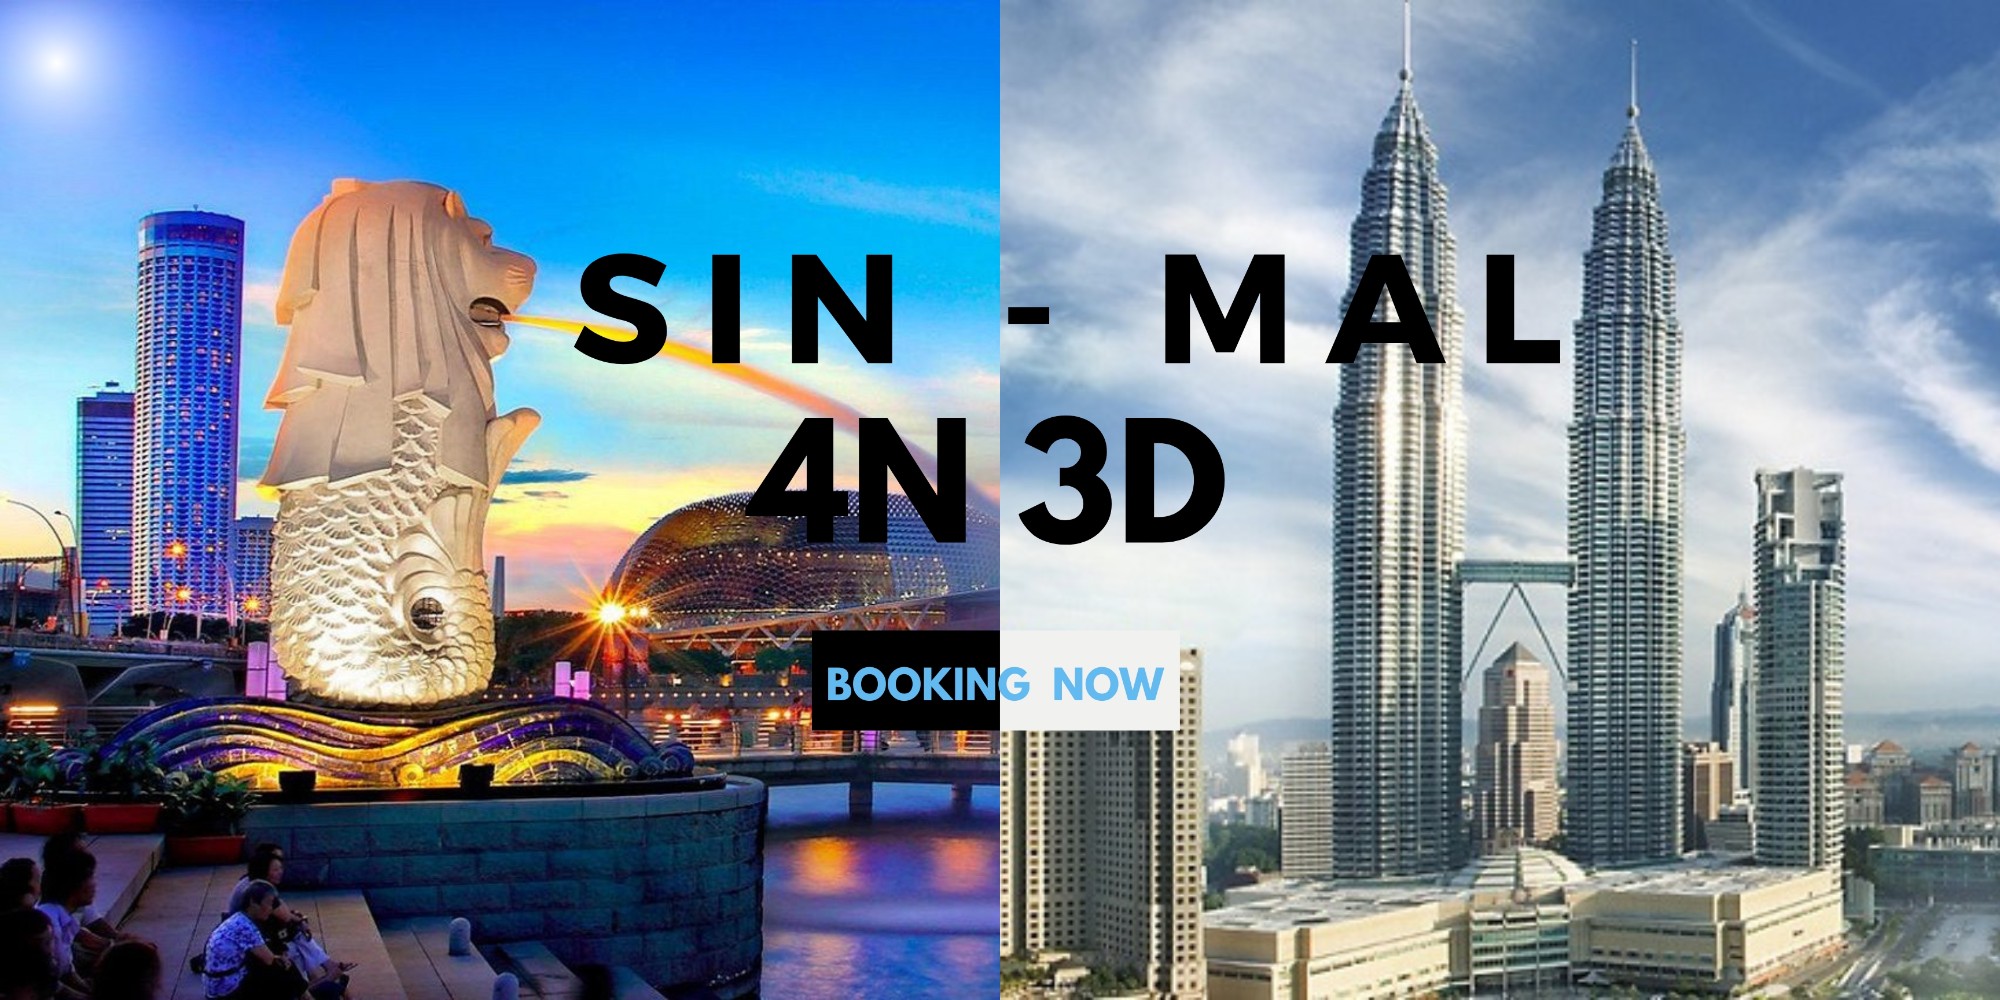 Tour du lịch Singapore - Malaysia 4N3D